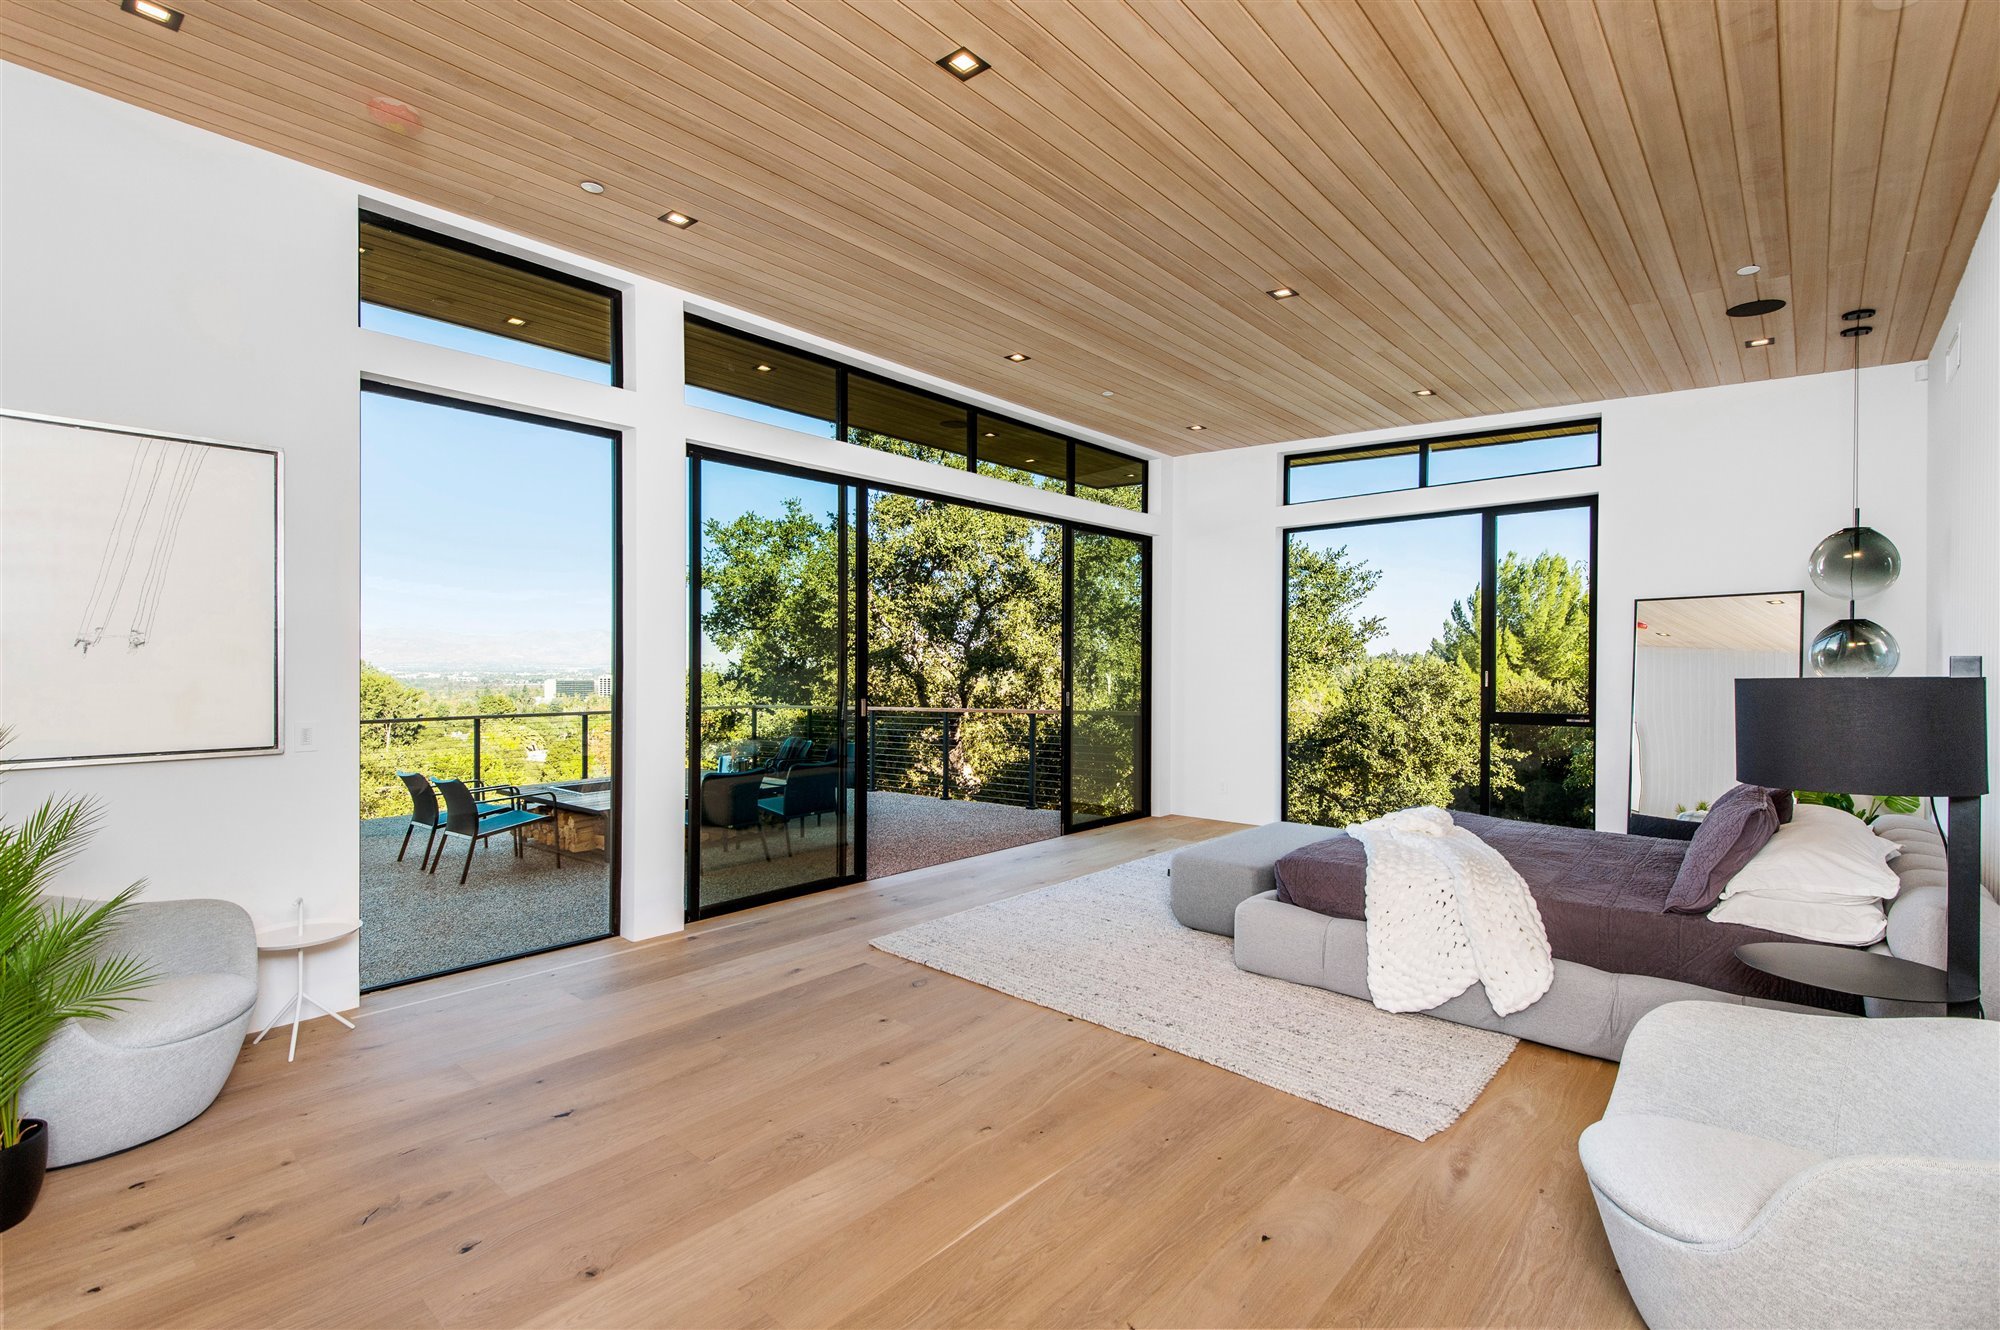 Casa moderna del actor de Modern Family Jesse Tyler Ferguson en Encino los Angeles dormitorio abierto